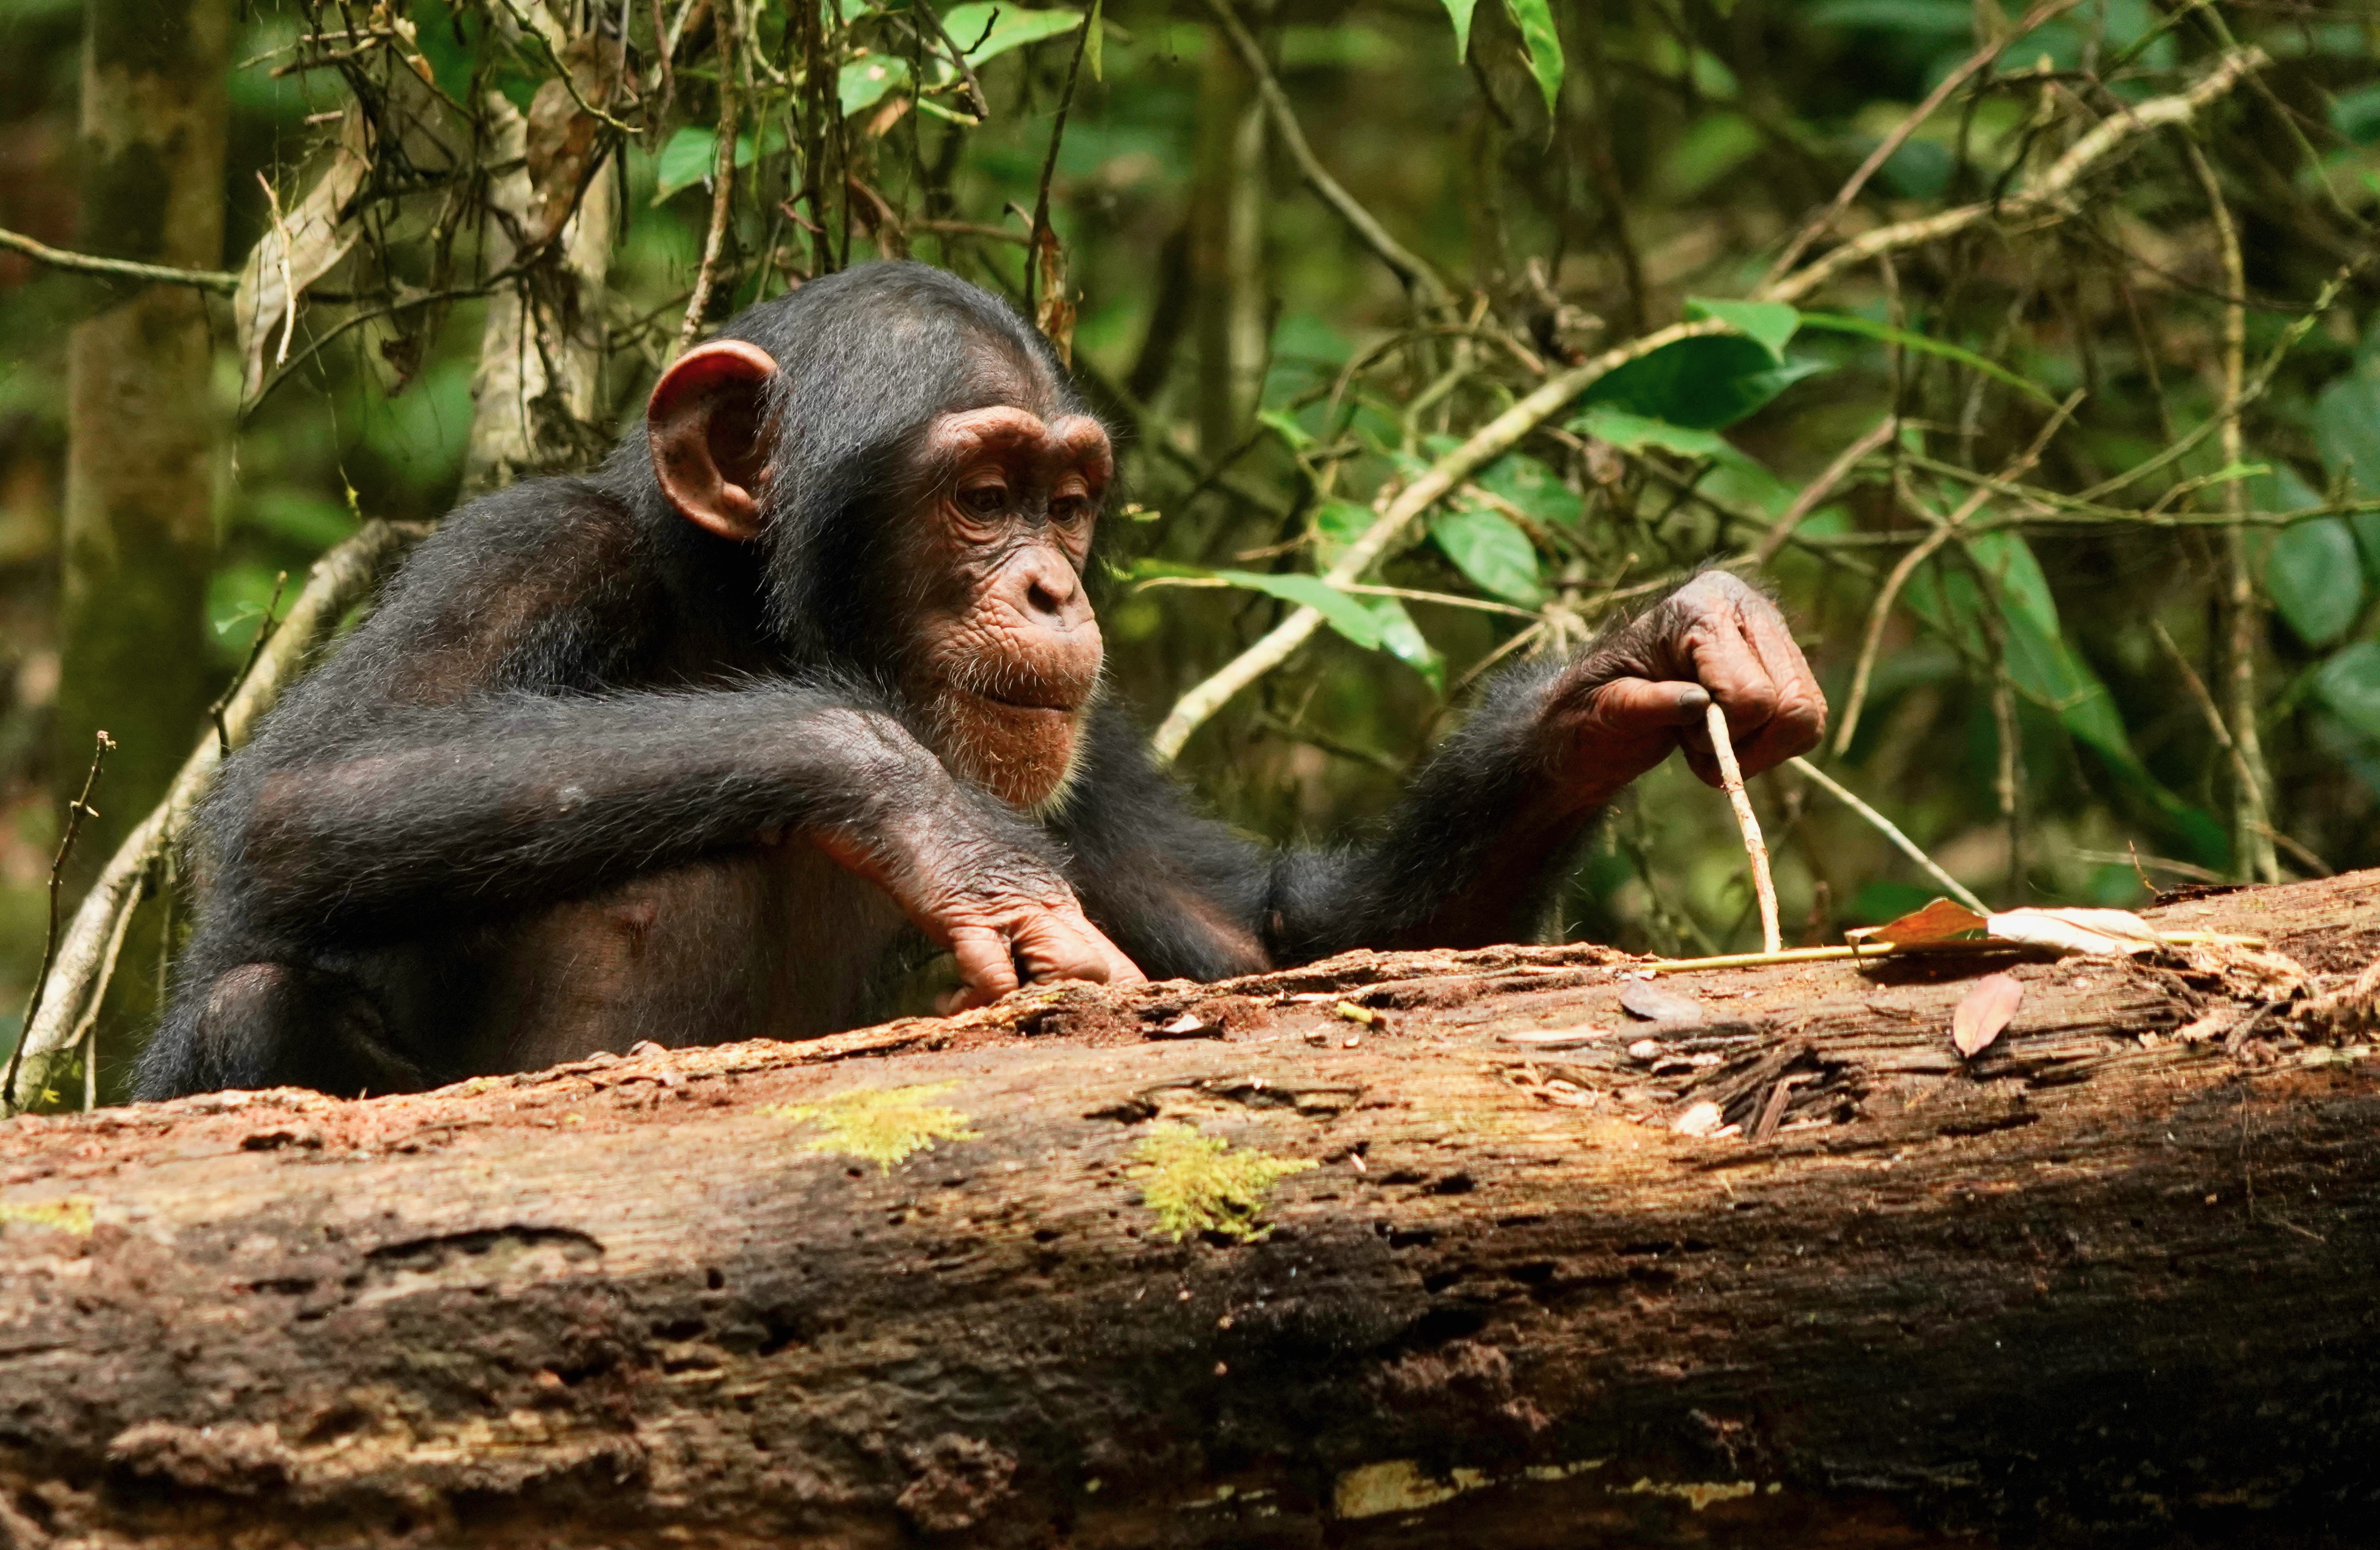 Les chimpanzés peuvent apprendre continuellement en vieillissant, un facteur de l’évolution humaine